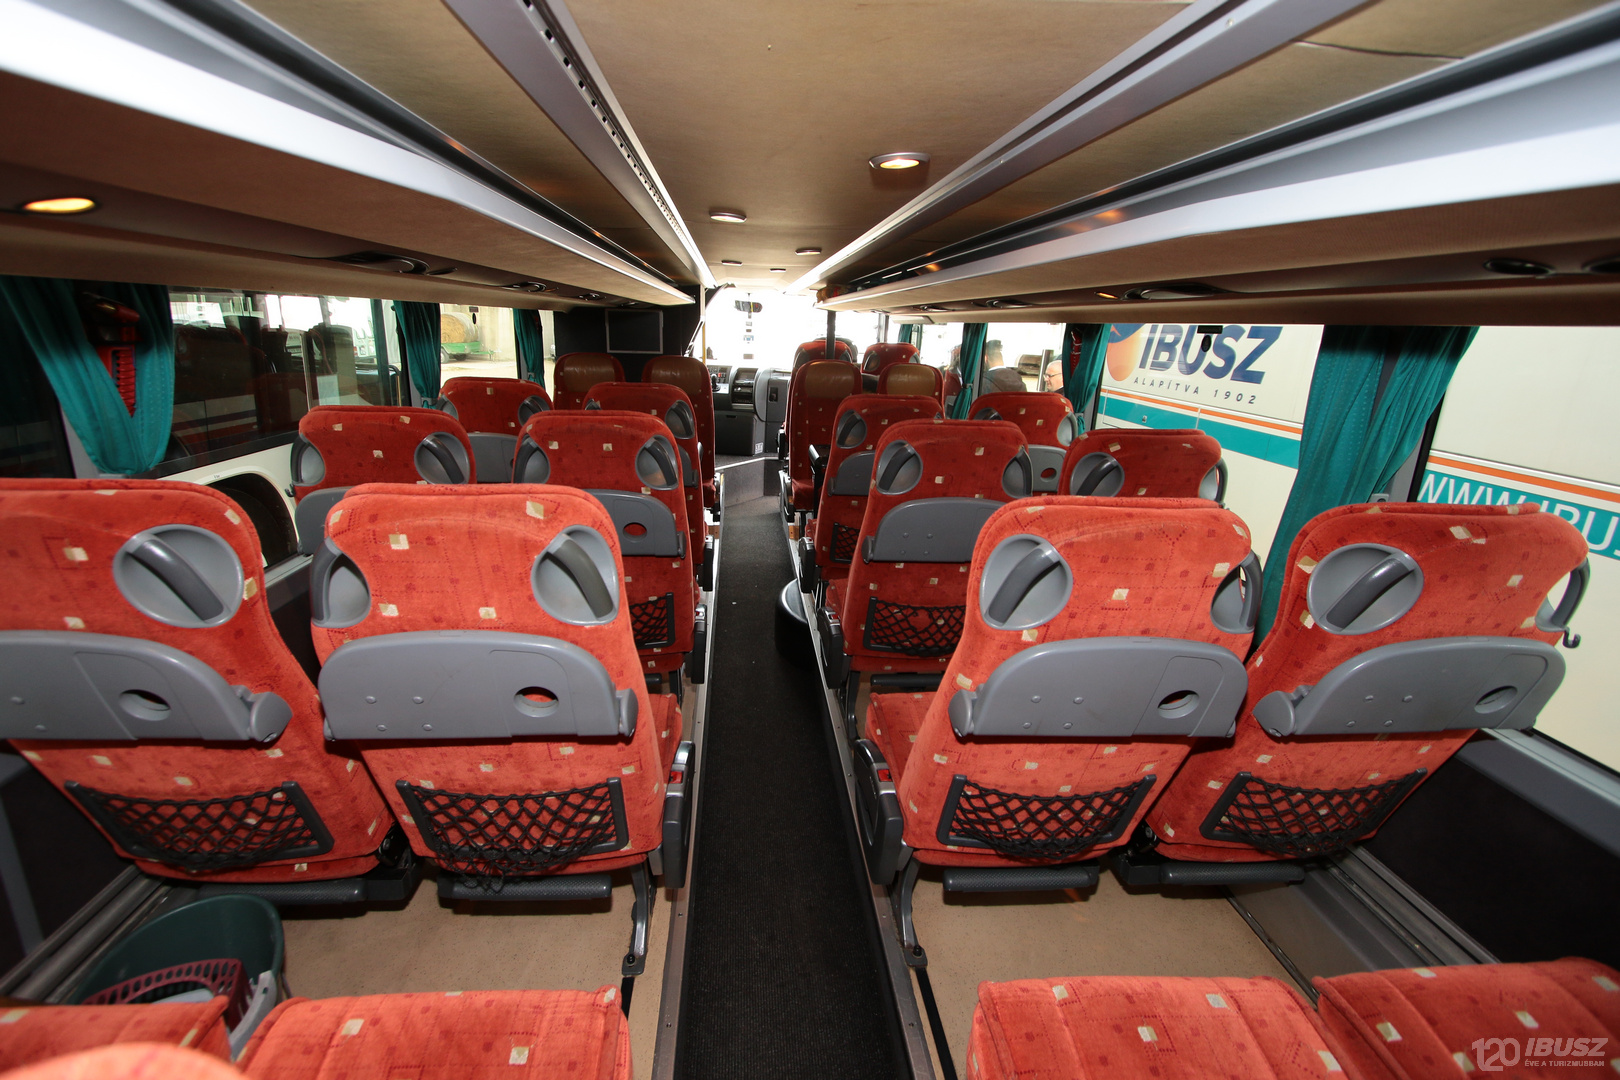 Az IBUSZ által szervezett Olympos expressz 2023 buszjárat asztallal ellátott üléseinél az utazás közben kényelmesen és biztonságosan elfogyaszthatjuk az ételt.